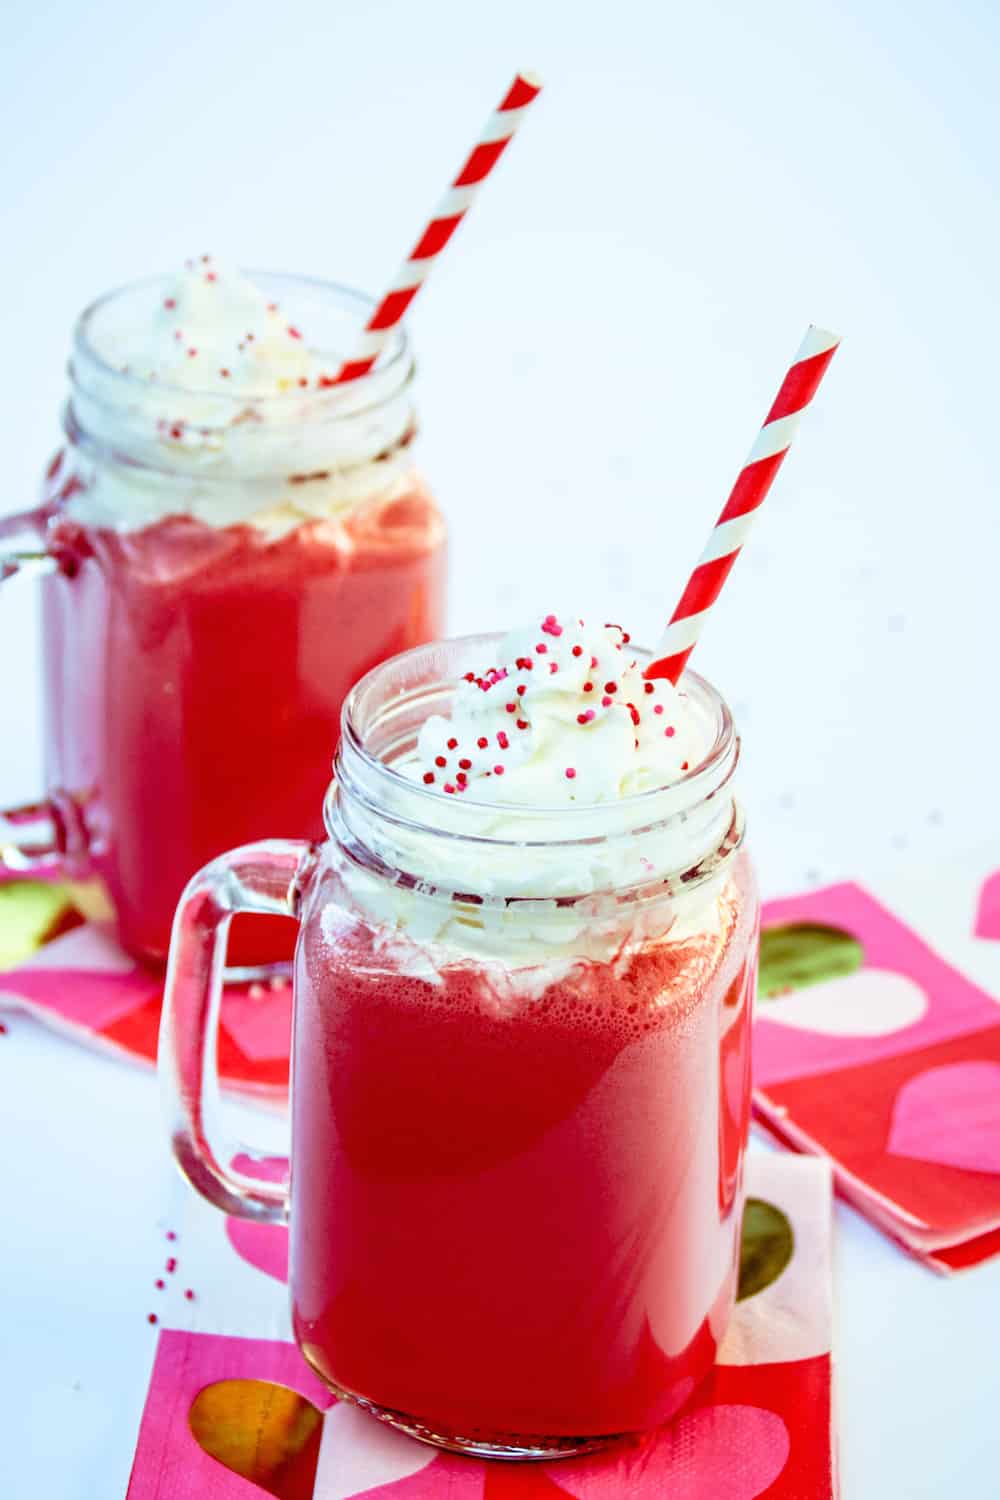 Red Velvet Milkshake Recipe